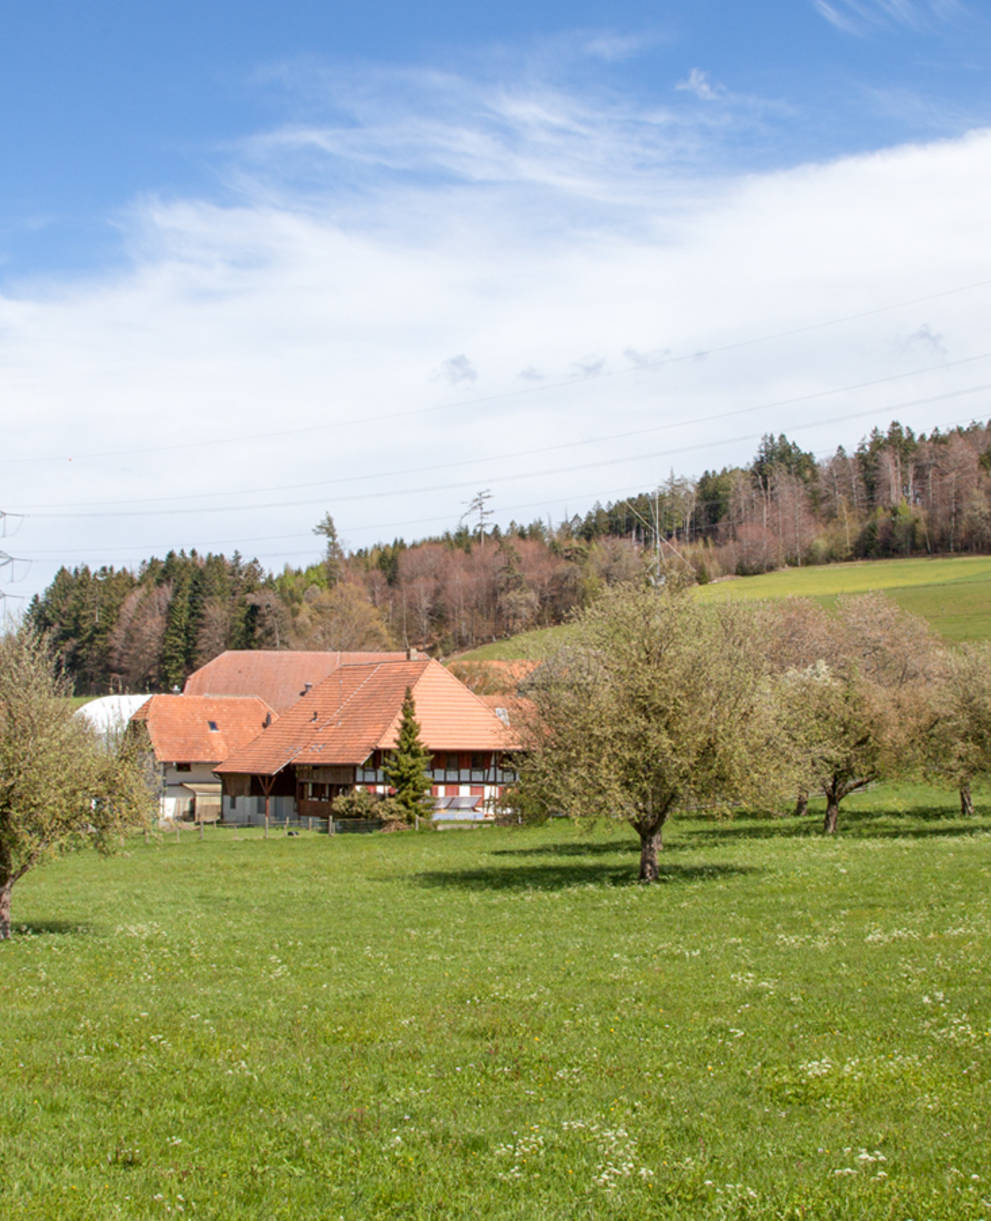 Bauernbetrieb mit Hochstammobstbäumen am Frienisberg © Matthias Sorg